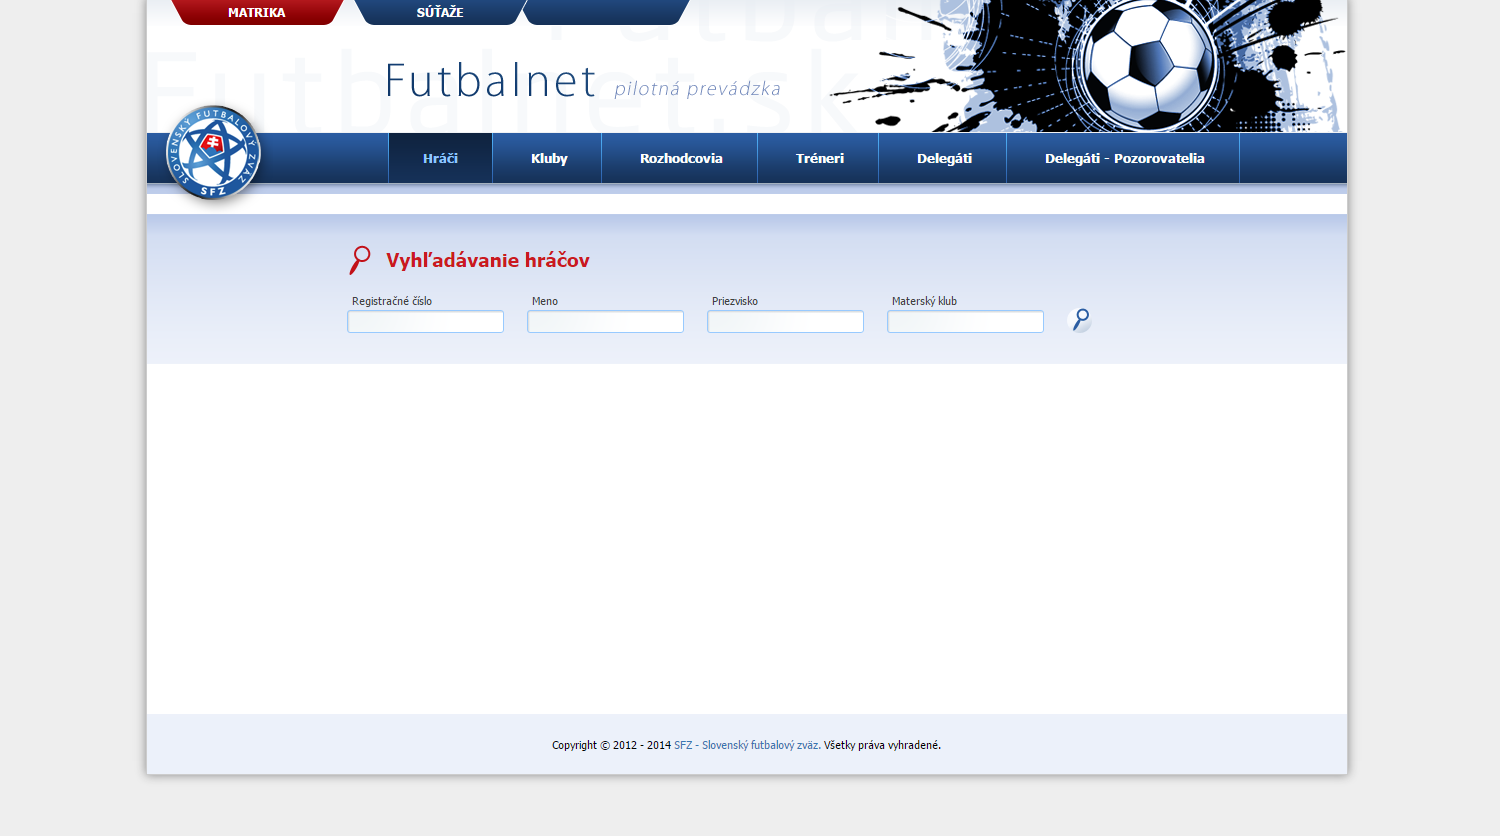 futbalnet.sk v rokoch 2012 - 2014